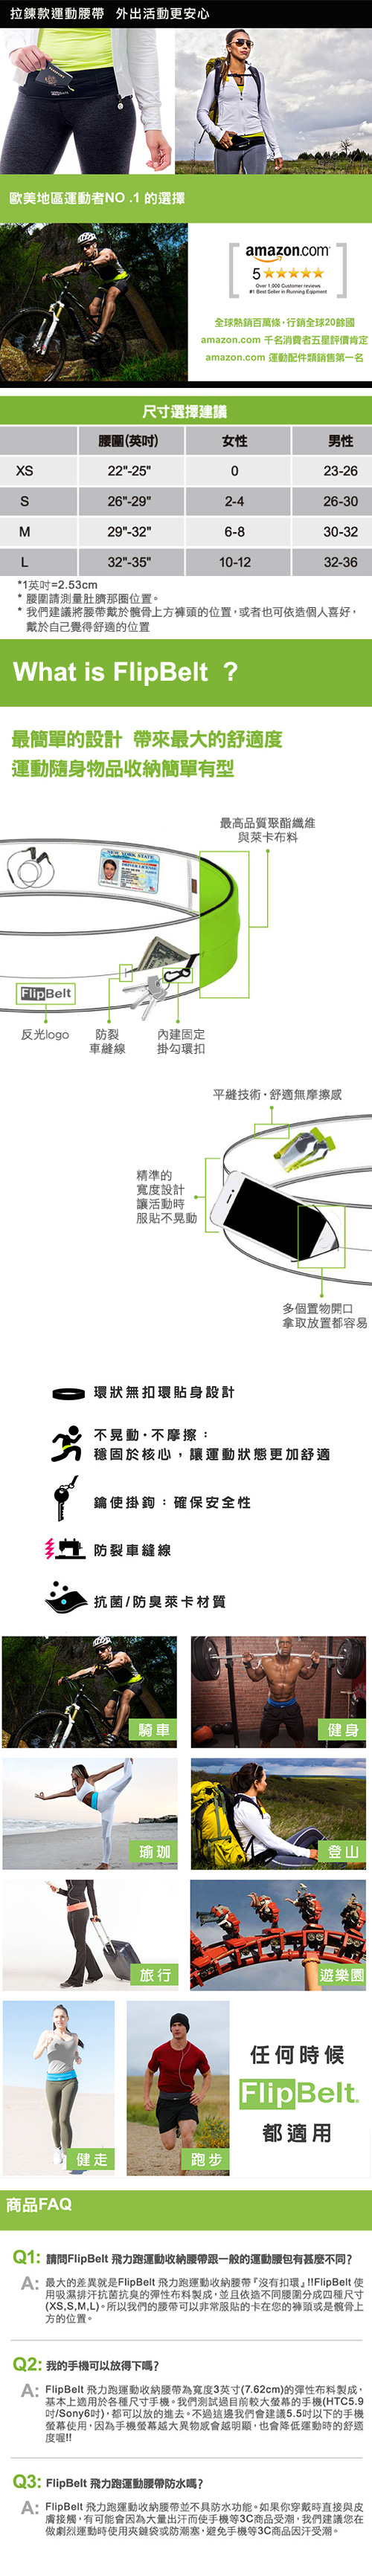 FlipBelt 飛力跑運動收納腰帶 拉鍊款 水藍 (XS)